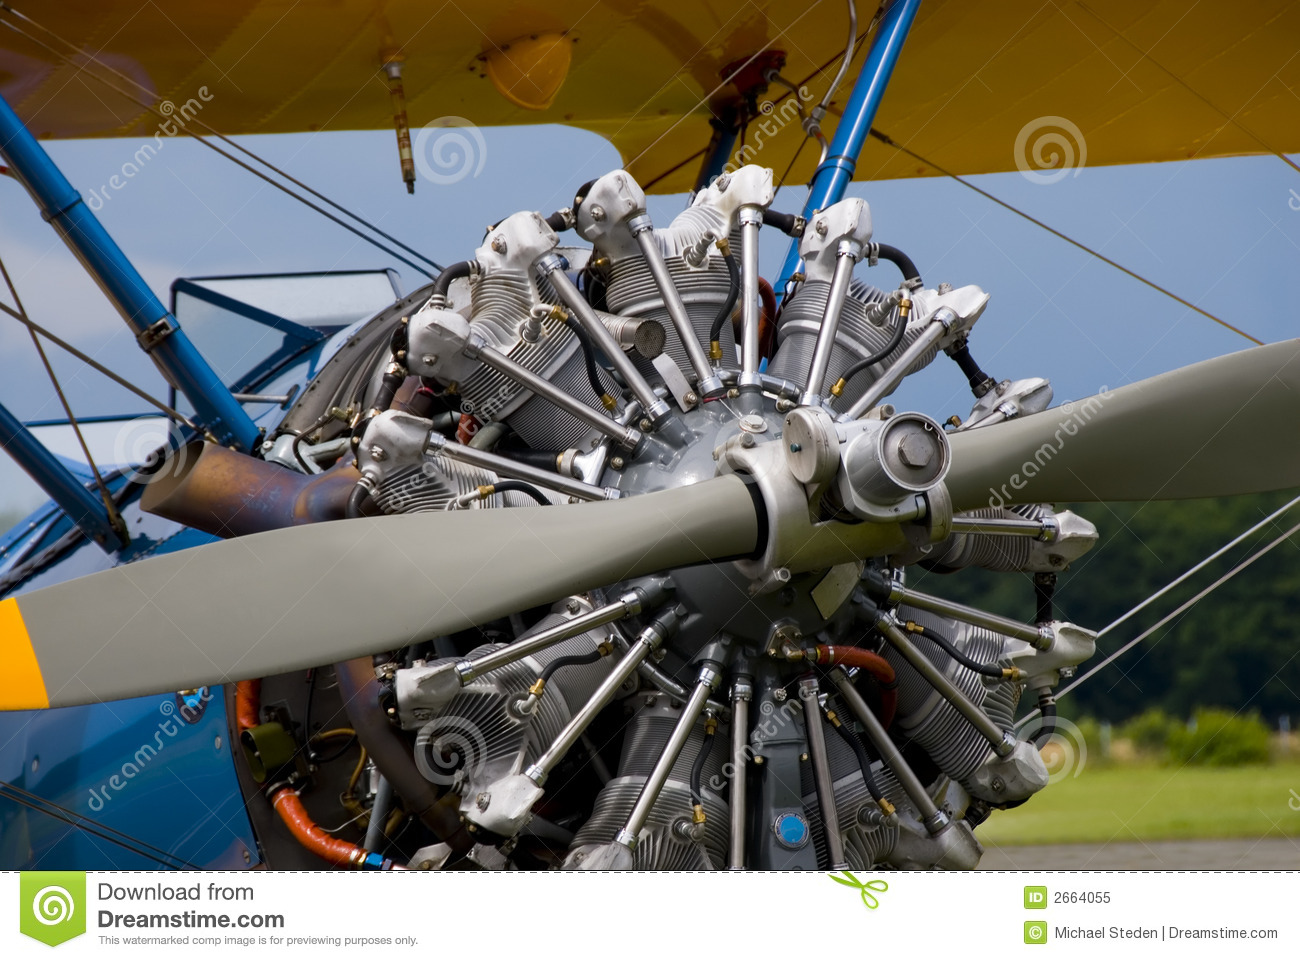 Historical Biplane Engine Royalty Free Stock Photo   Image  2664055